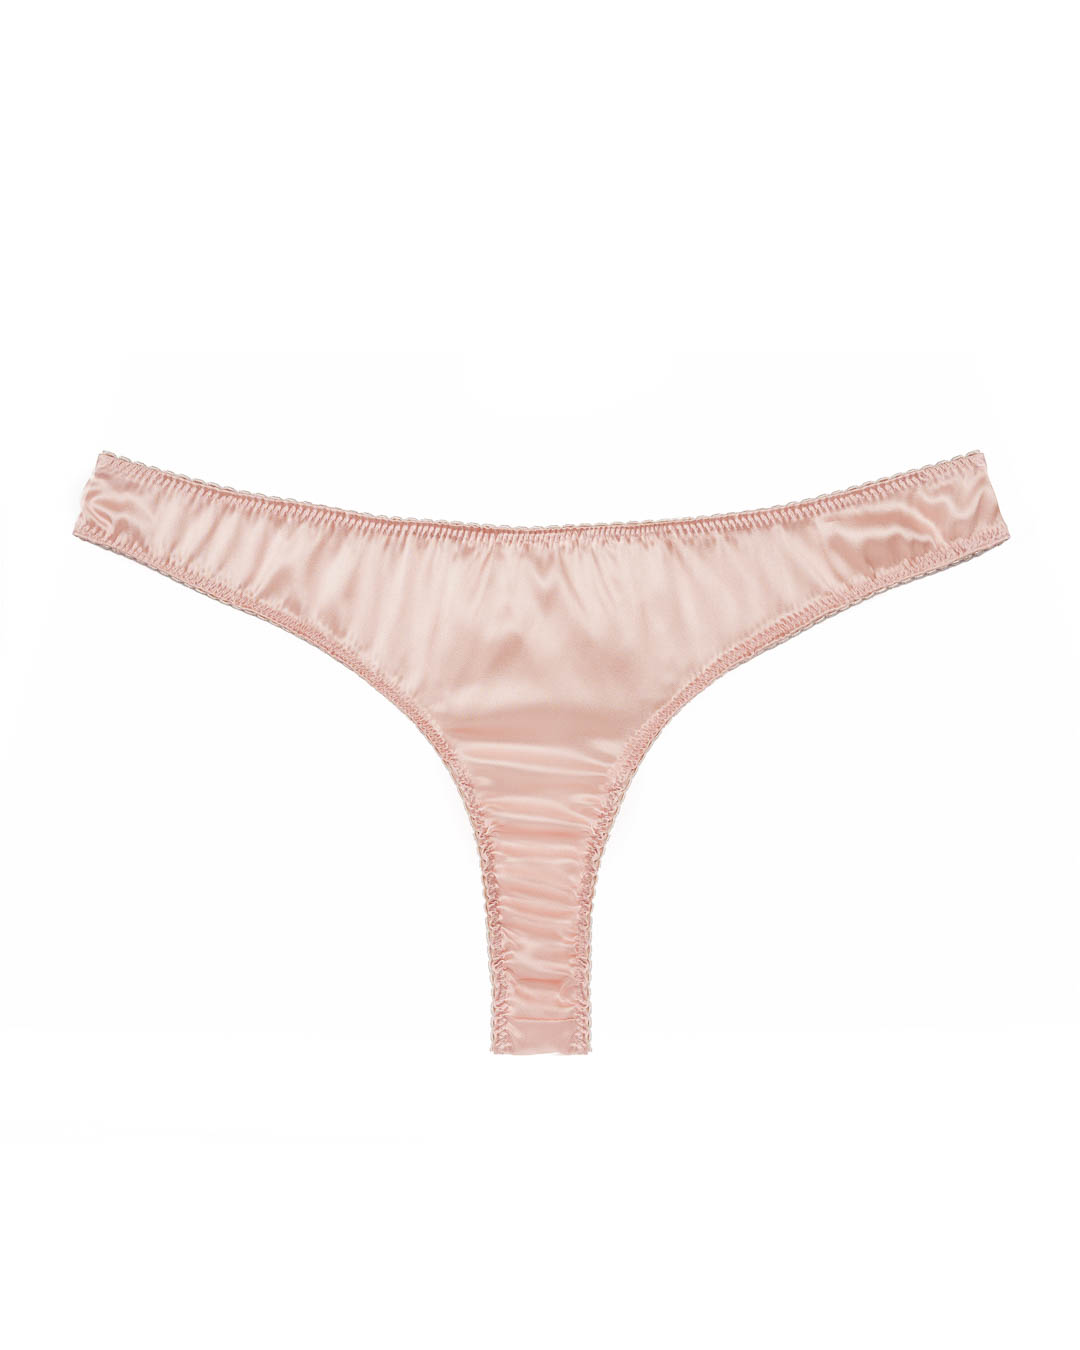 Silk Charmeuse Thong Light Pink - JULMERRESIRENE